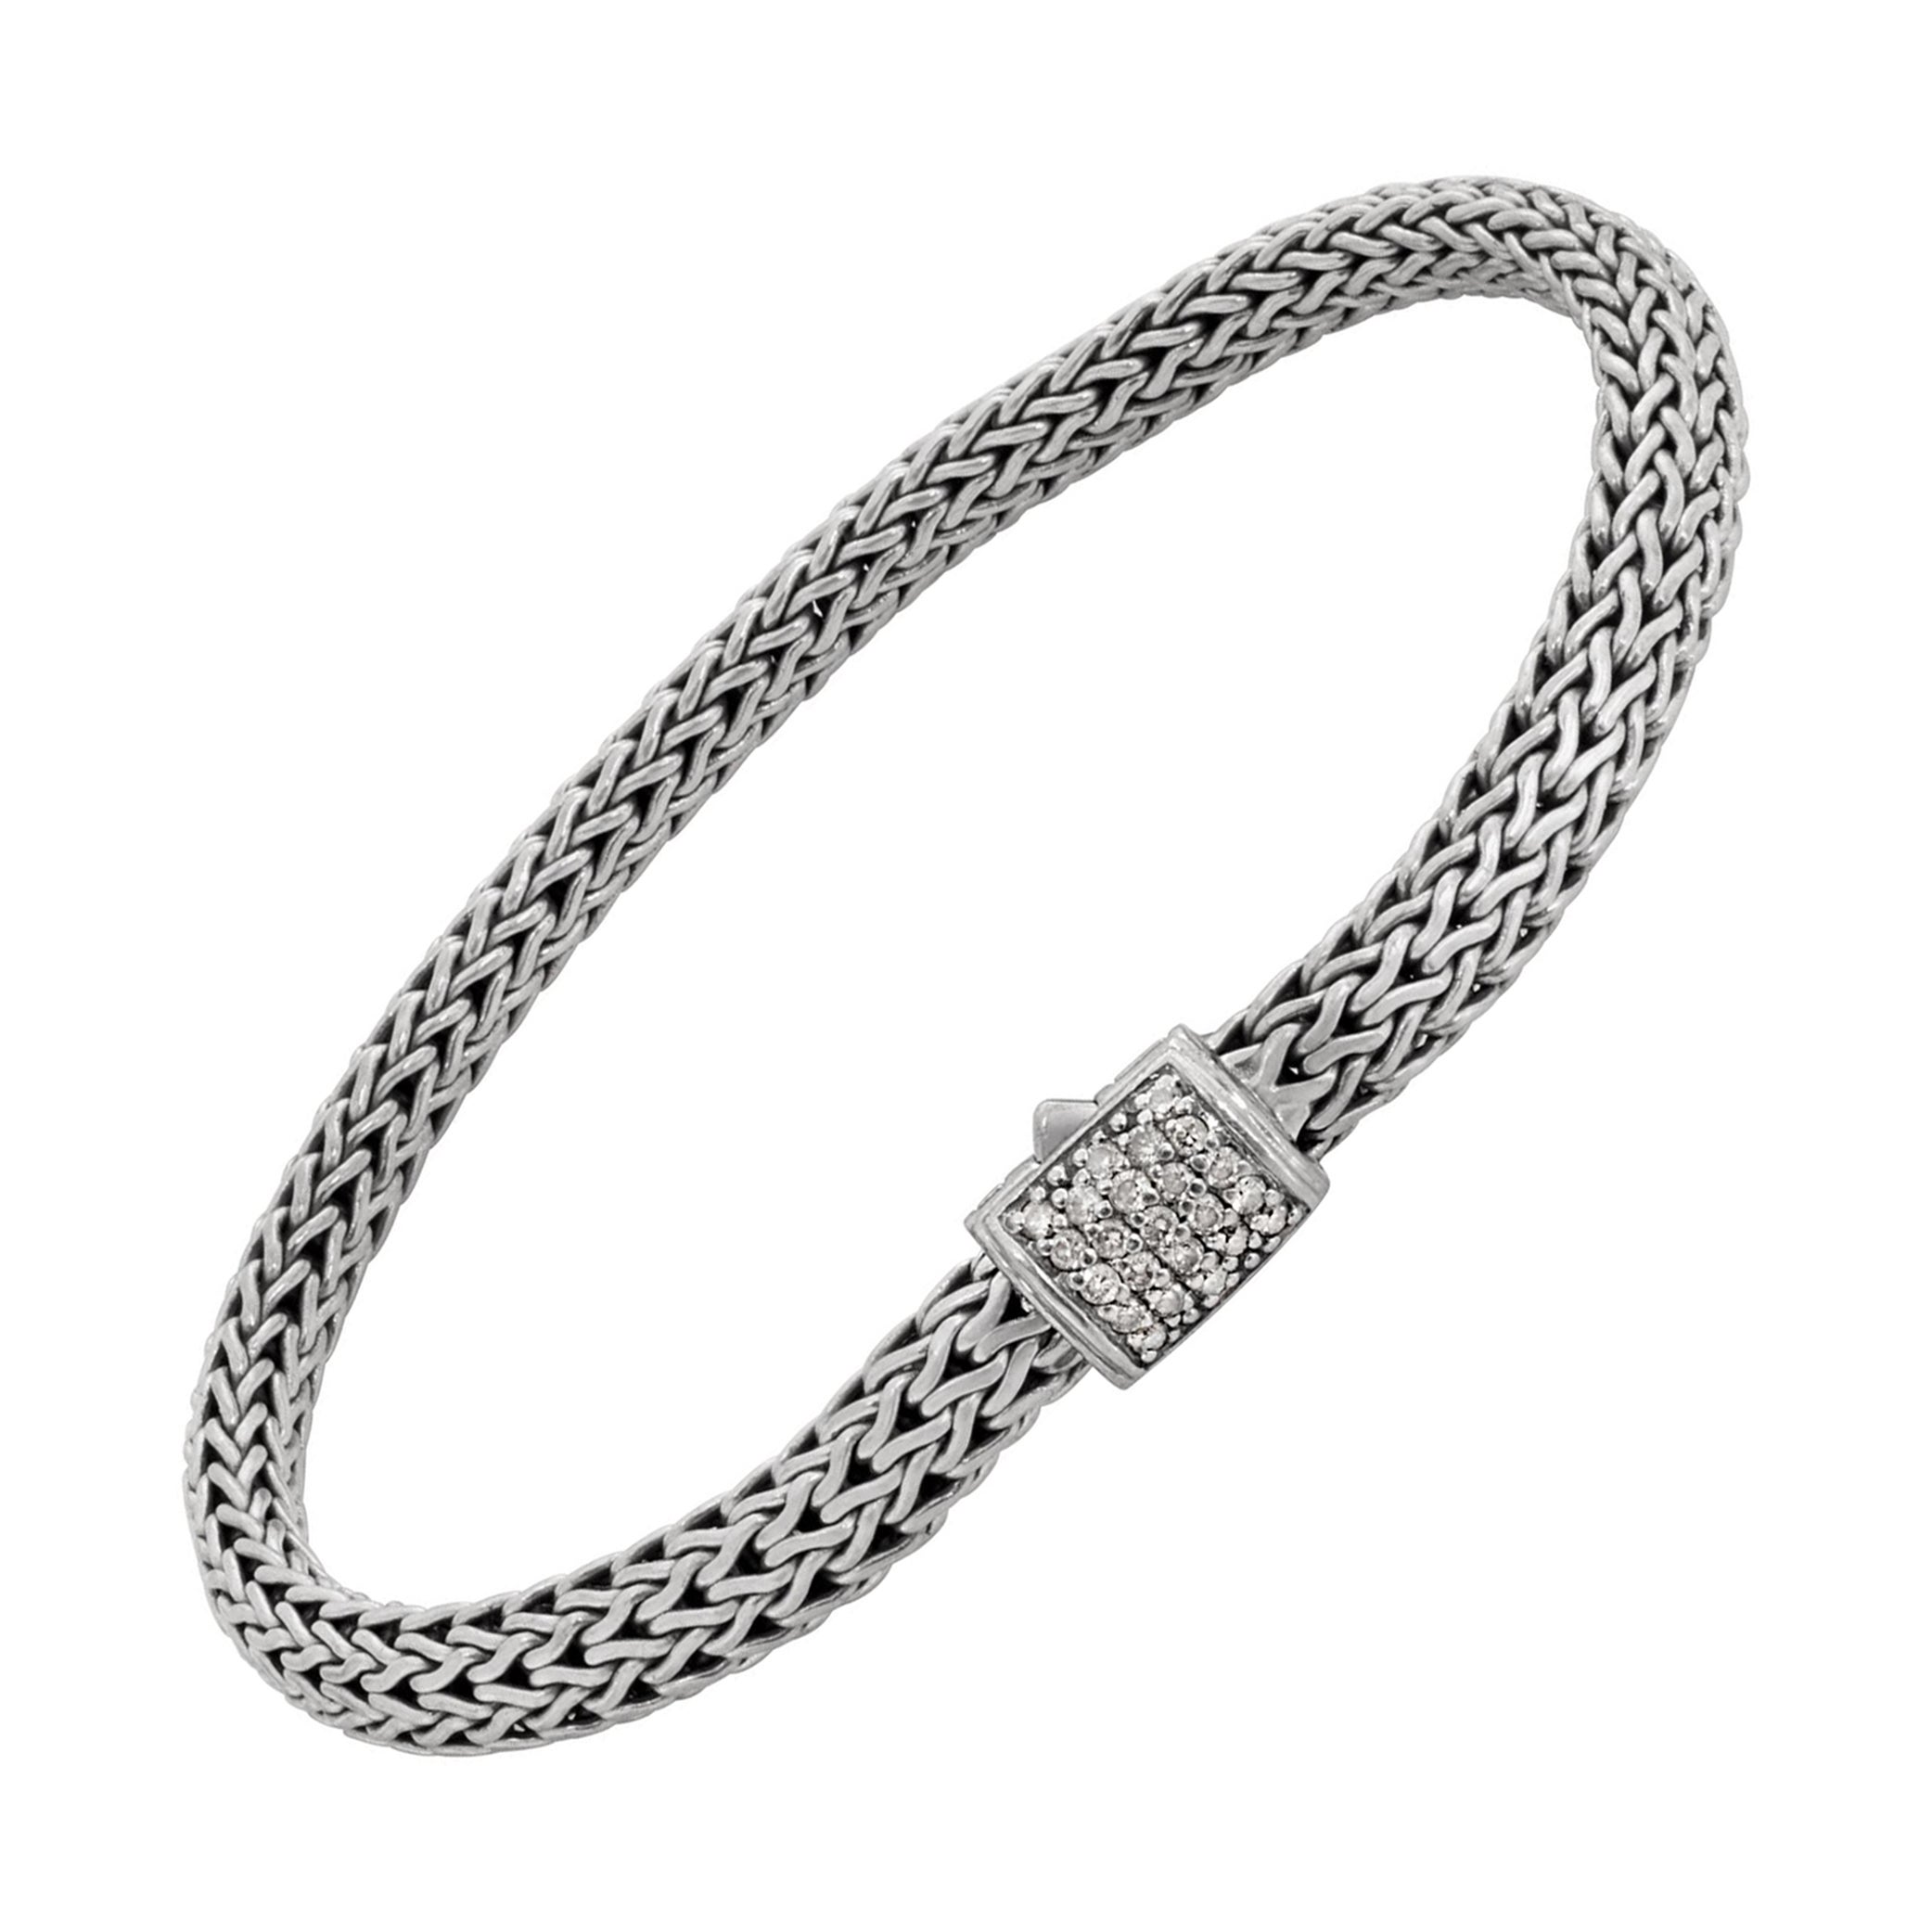 John Hardy diamond sterling silver bracelet